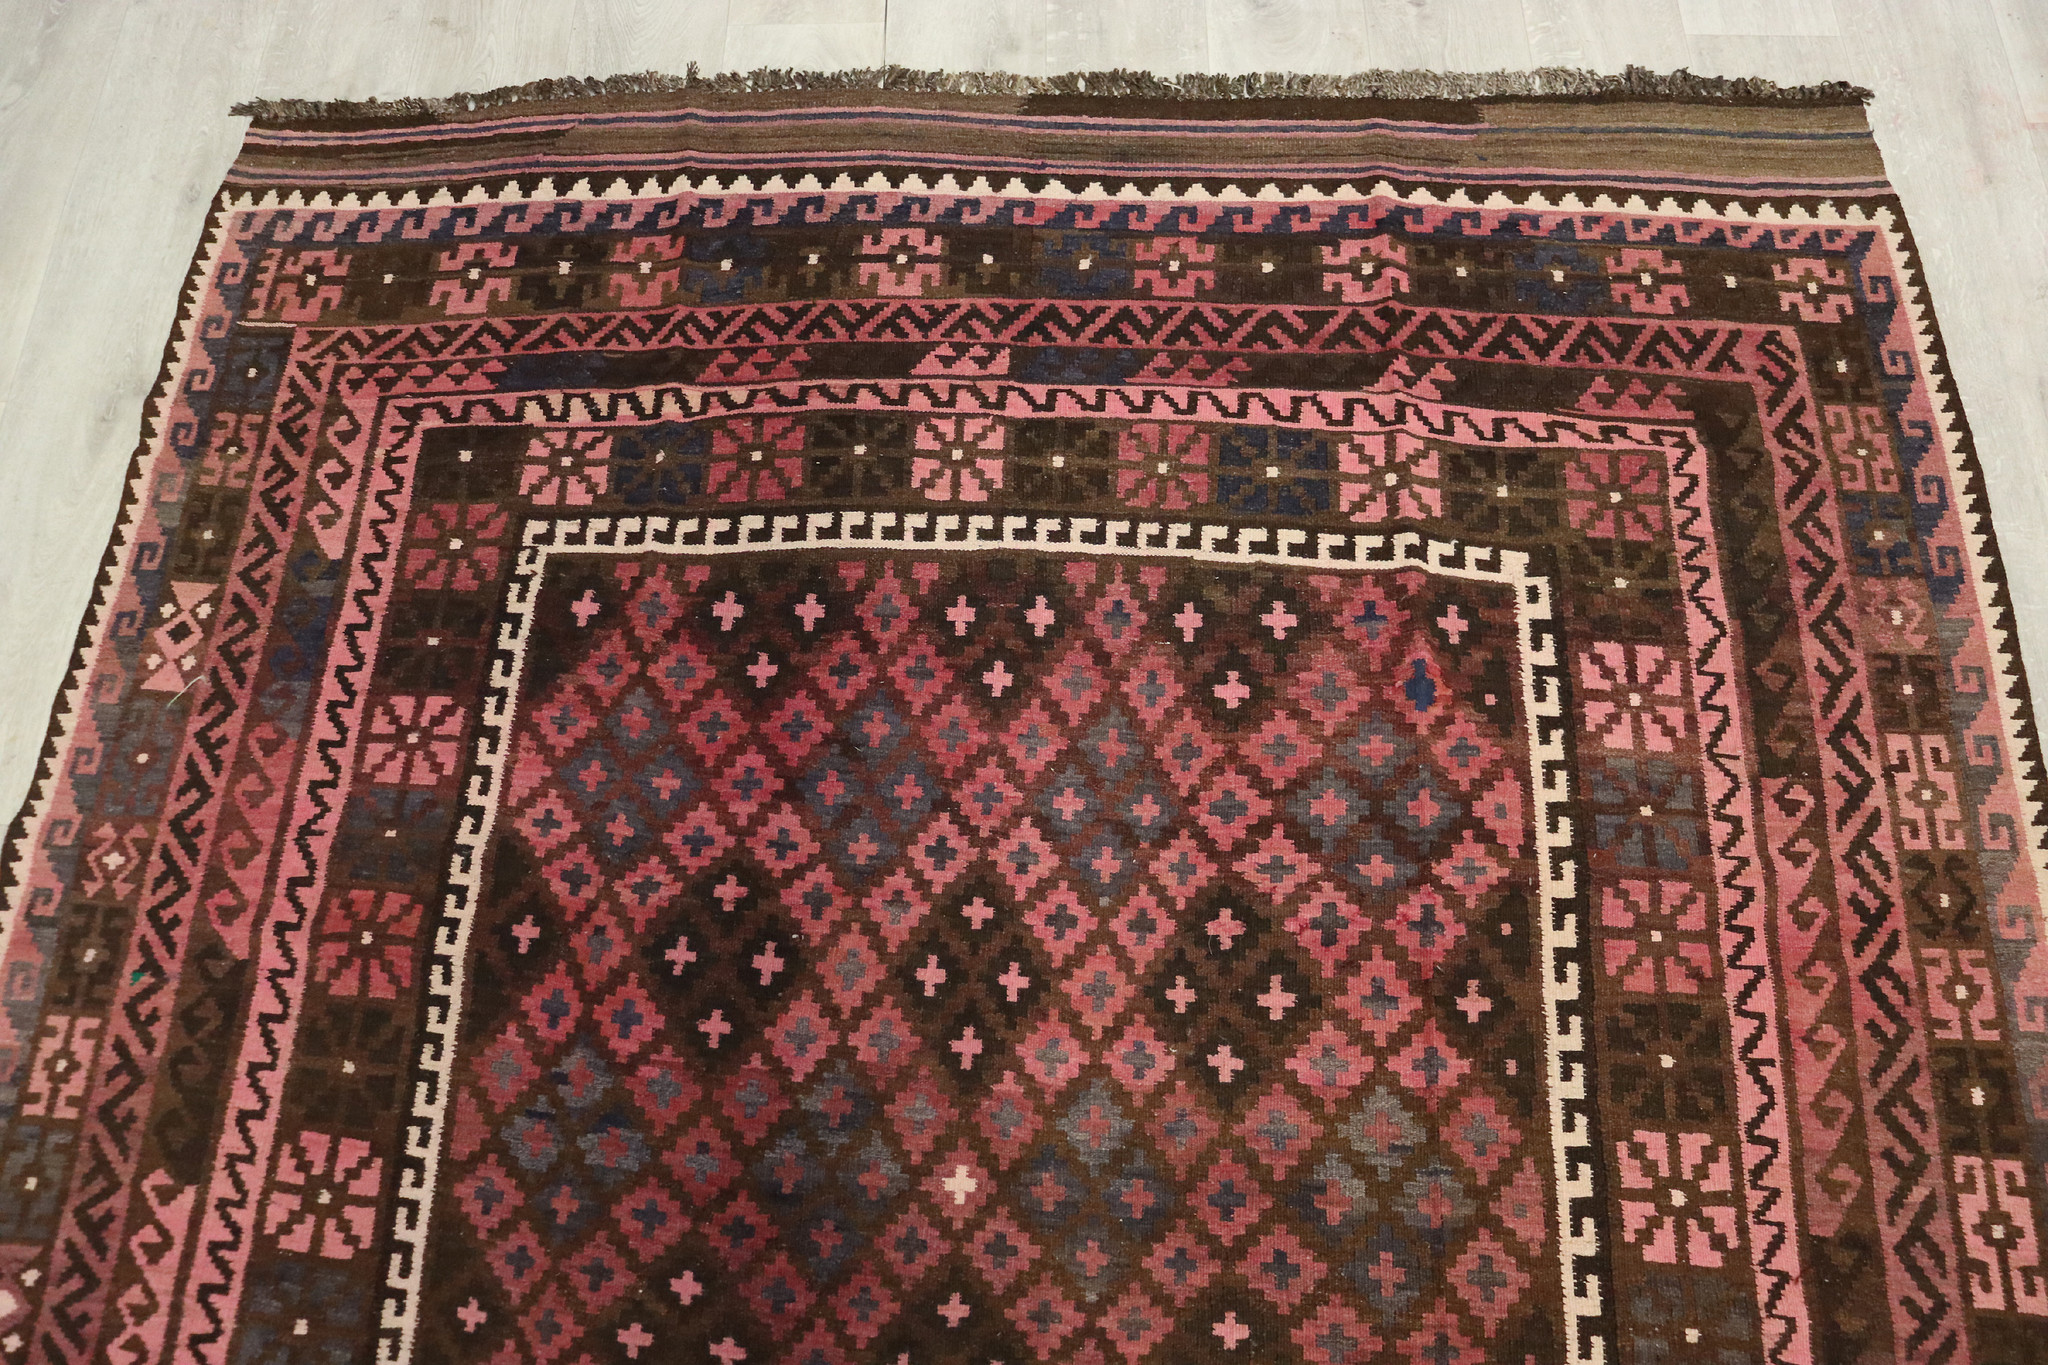 283x209 cm Afghan natural colors nomadic Kilim rug  No:263